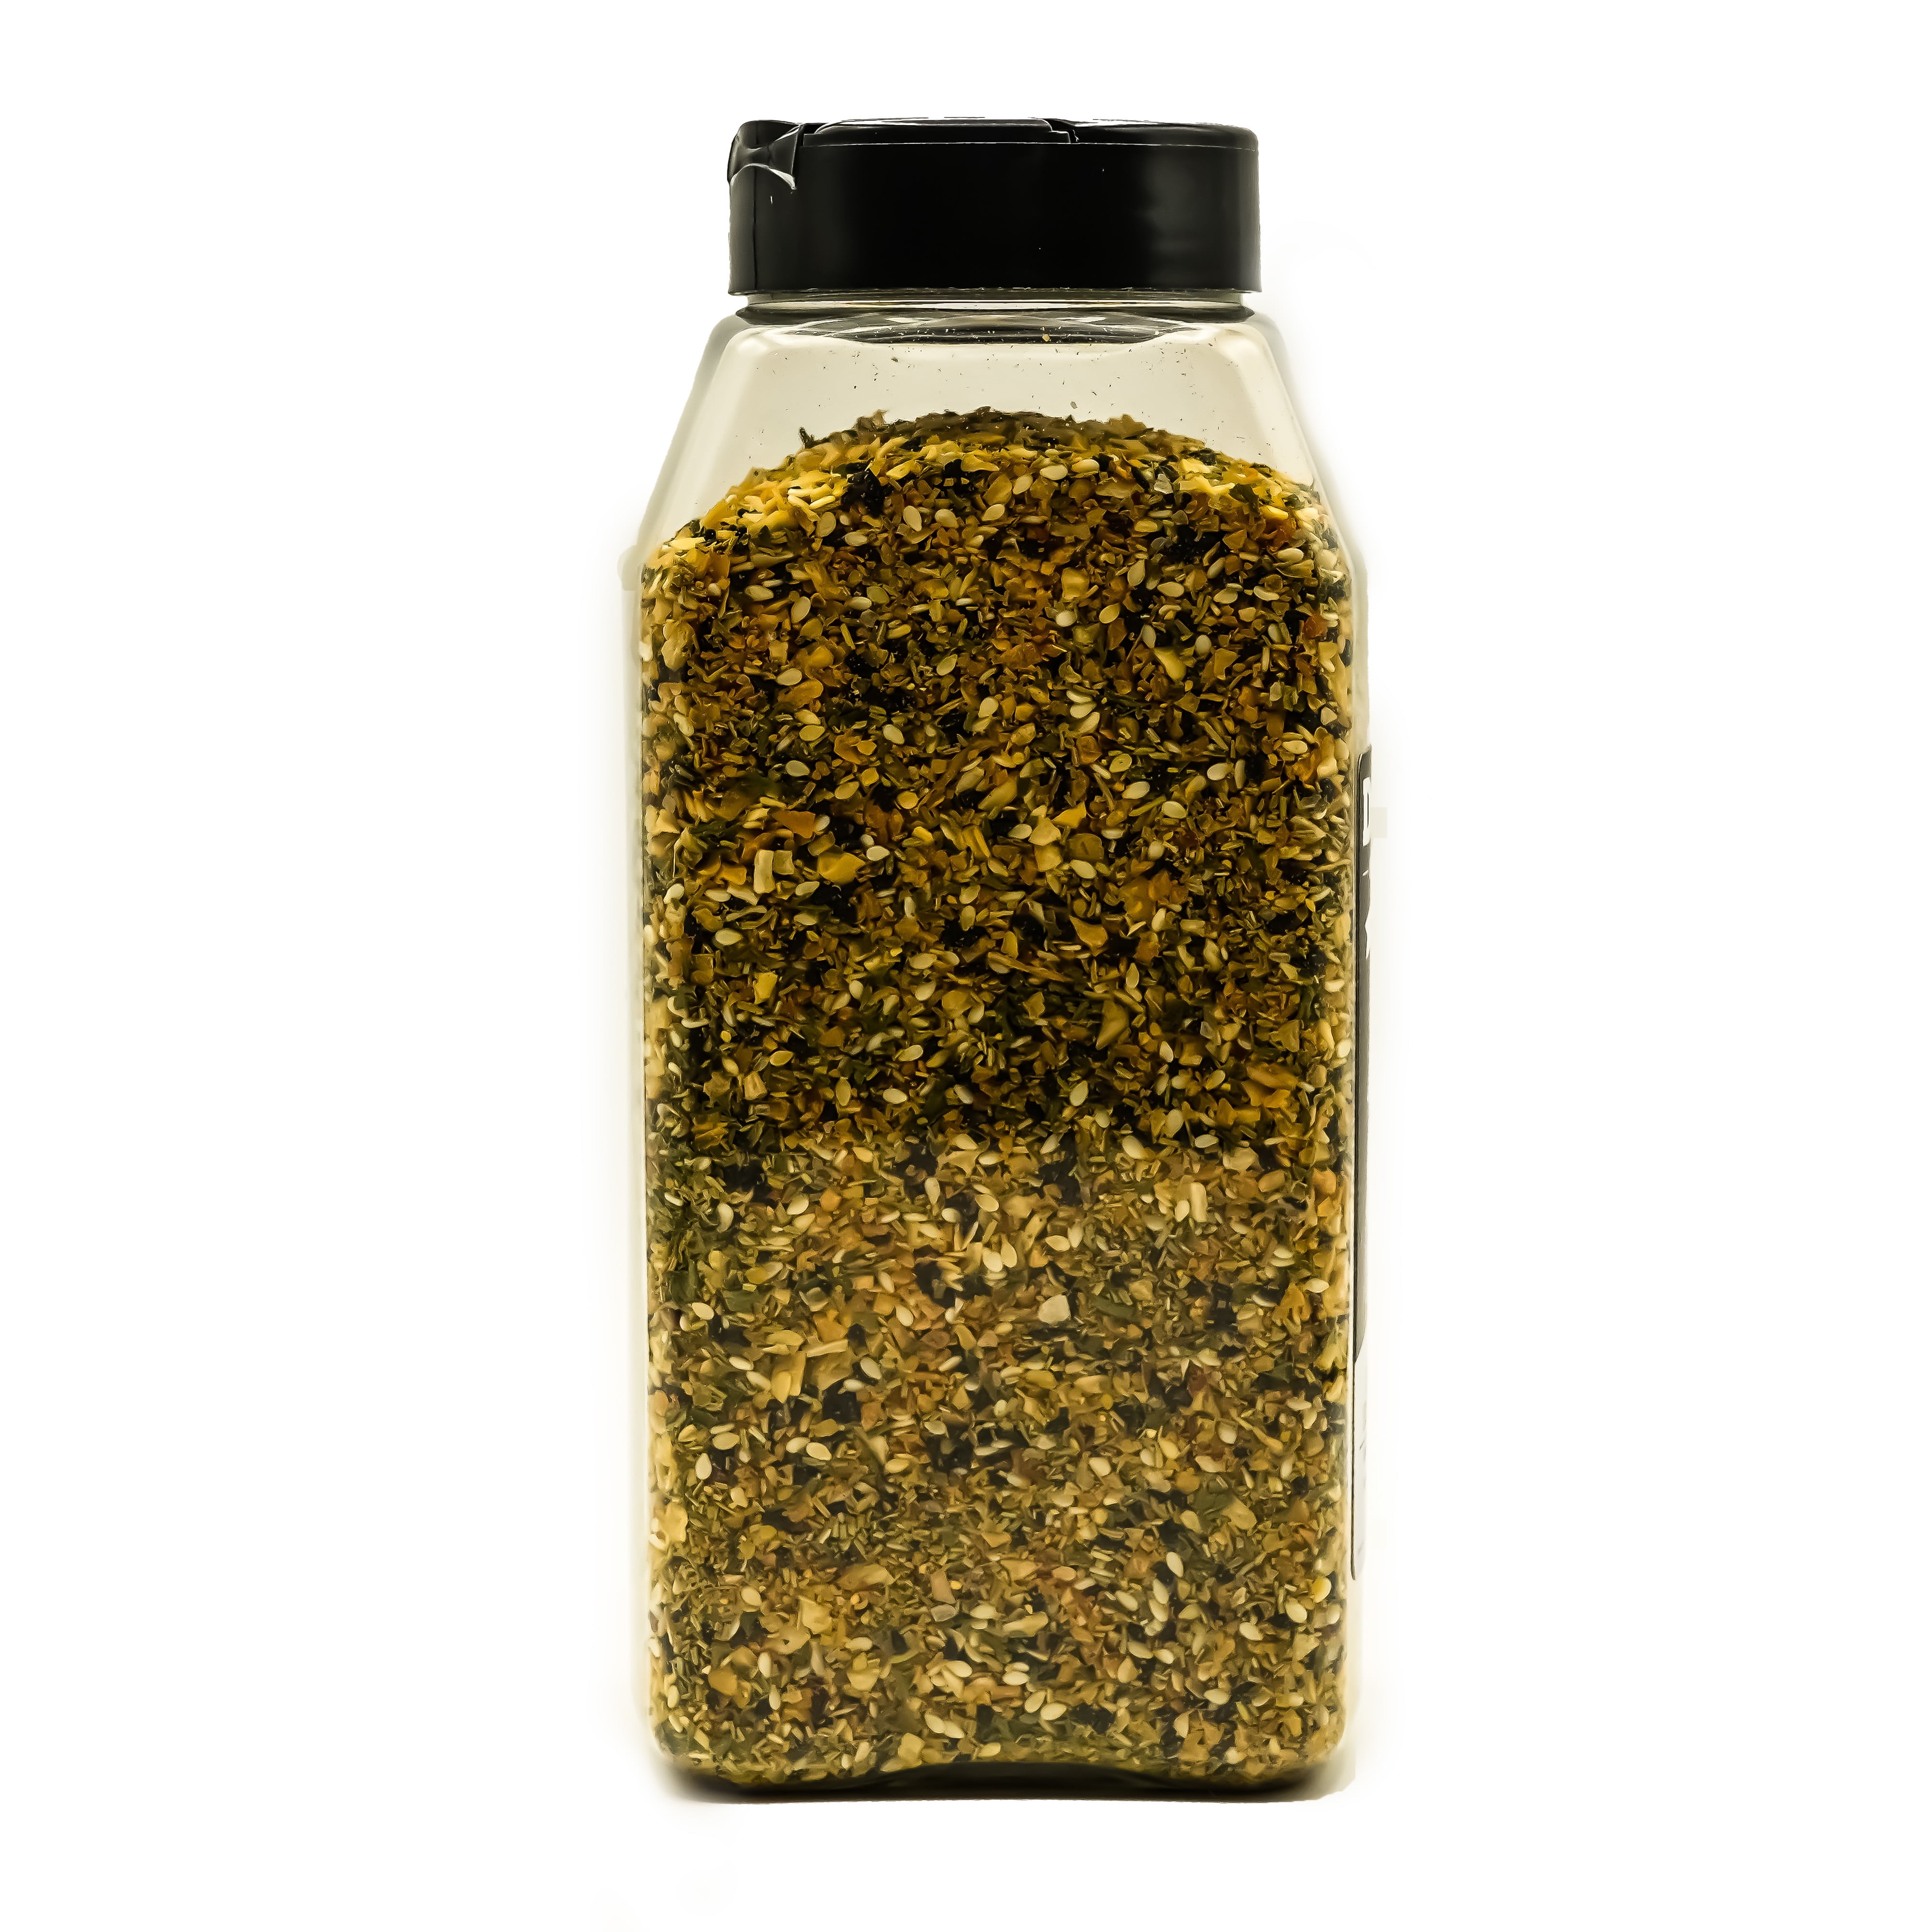 Dan-O's Seasoning 8.9 oz Starter Combo - 2 Pack (Original & Spicy), All-Natural, Sugar-Free, Keto, All-Purpose Seasonings